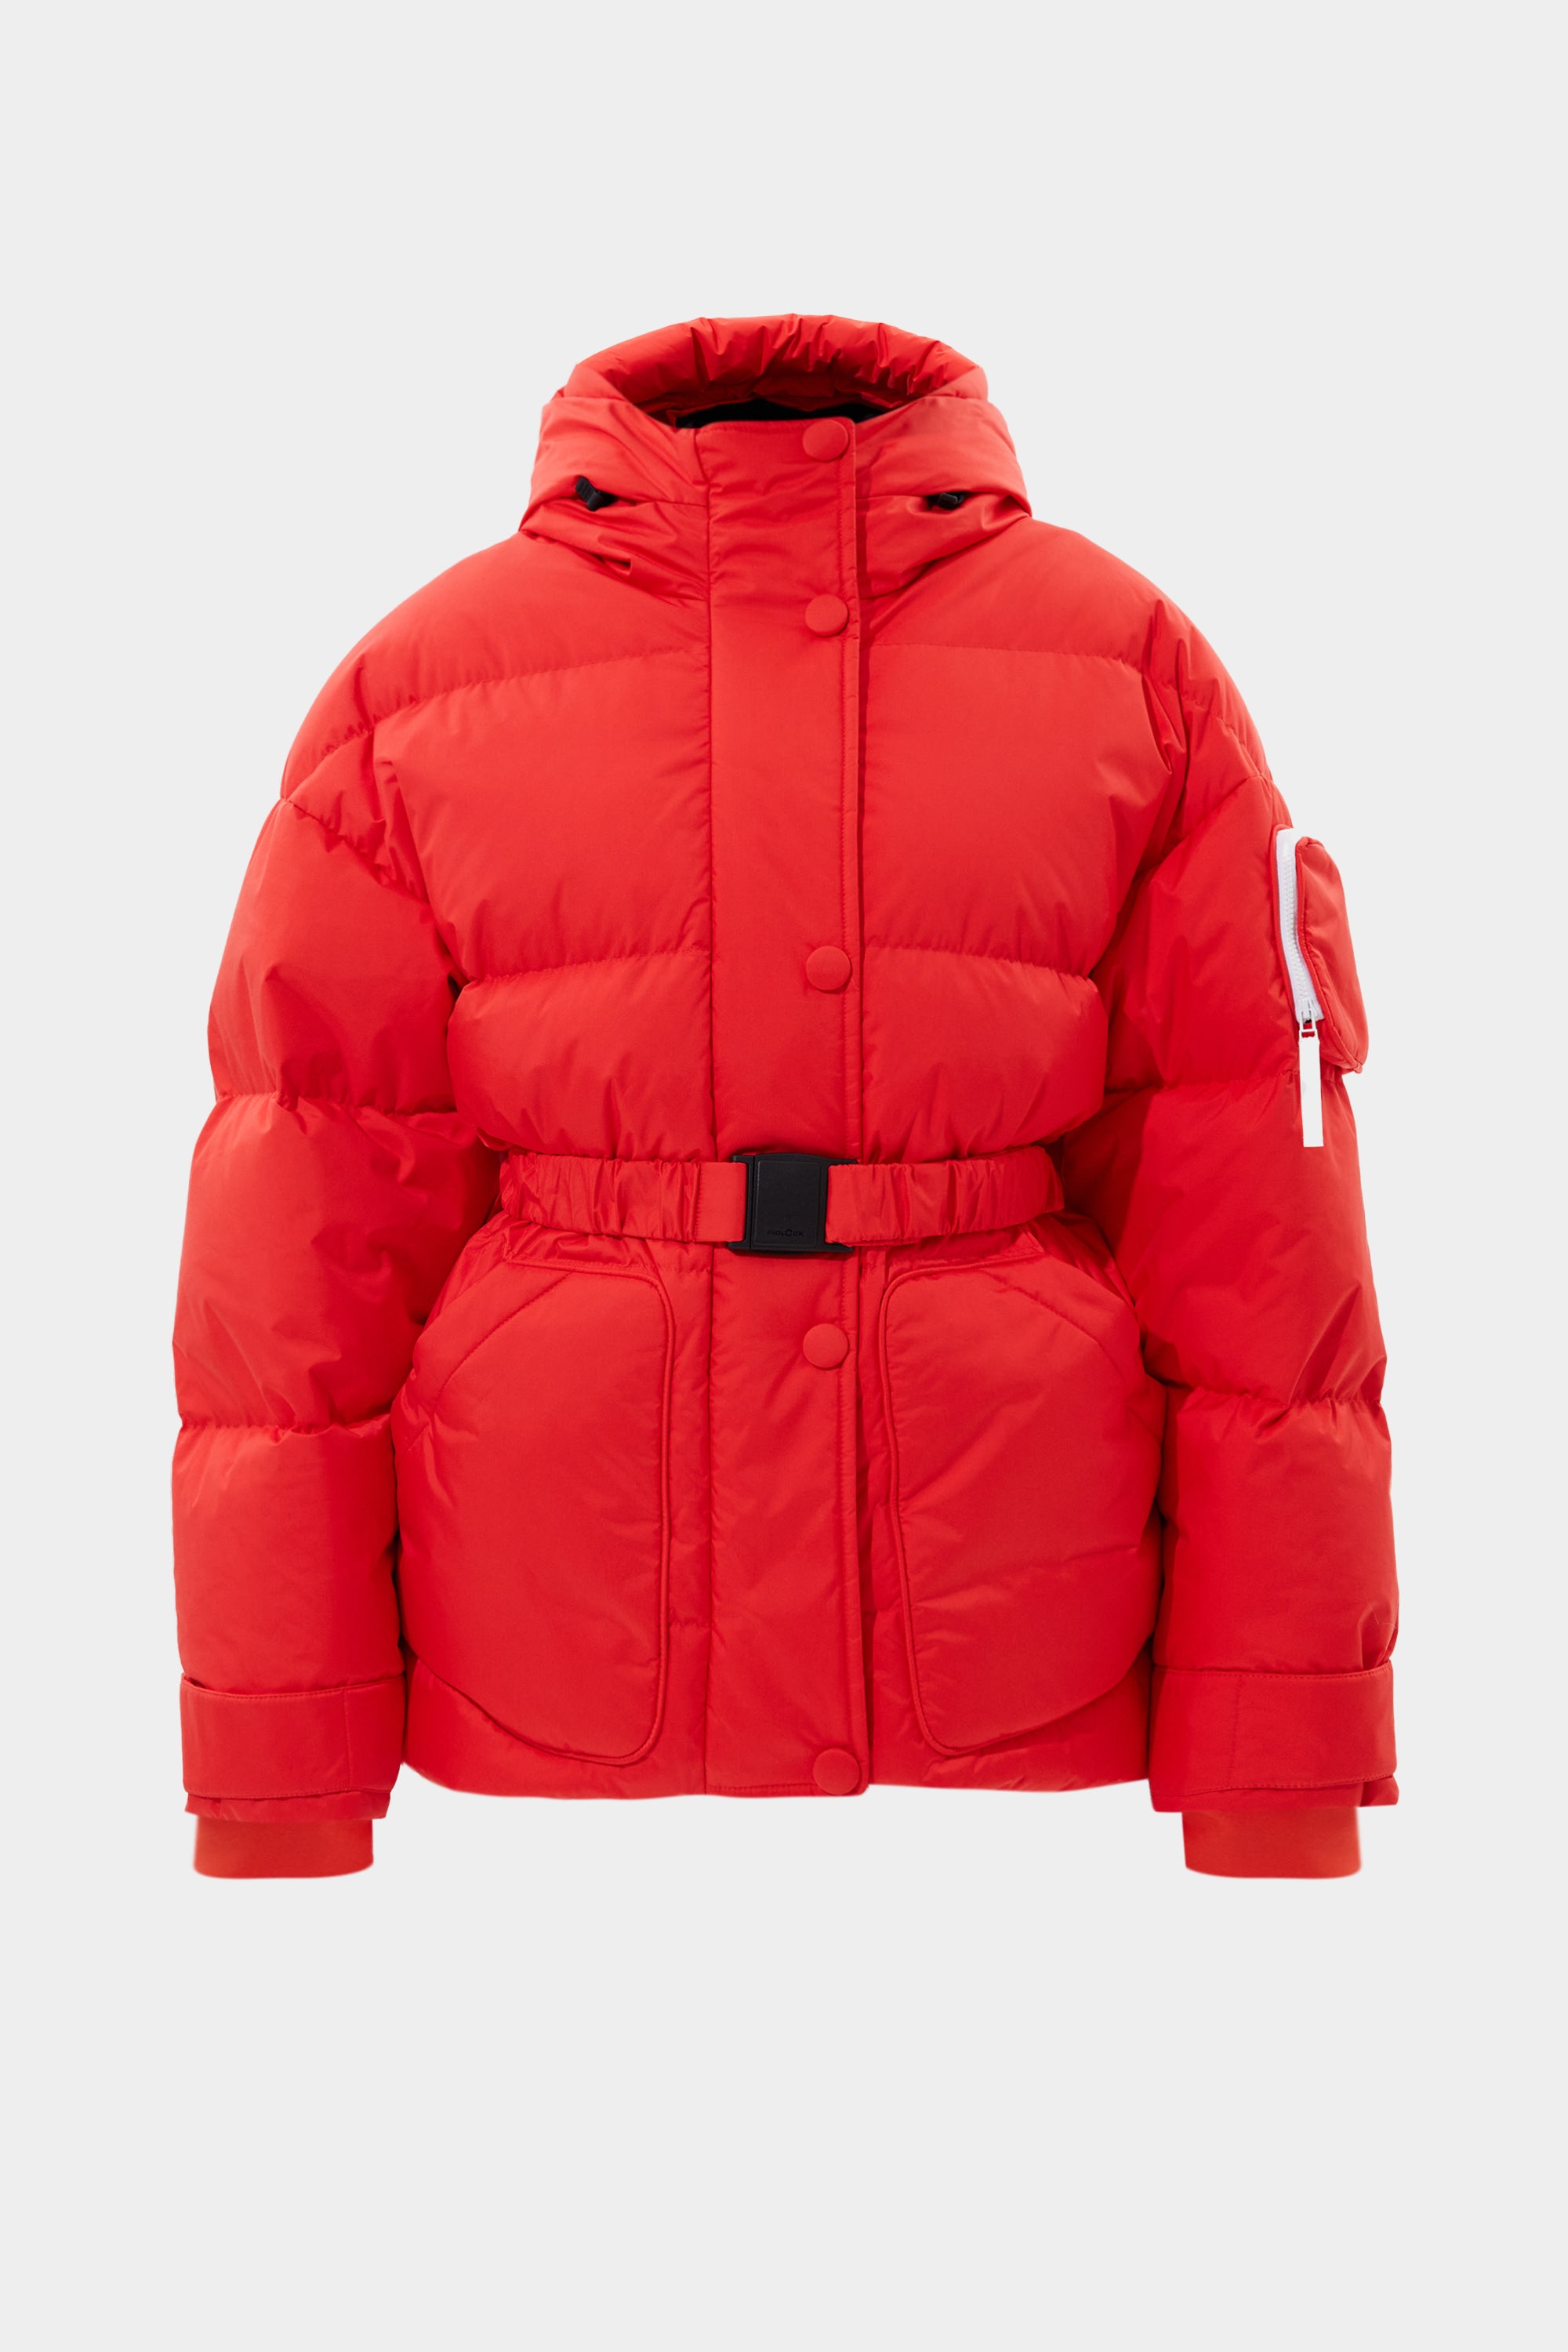 Apres Ski Michlin Jacket Tec Red